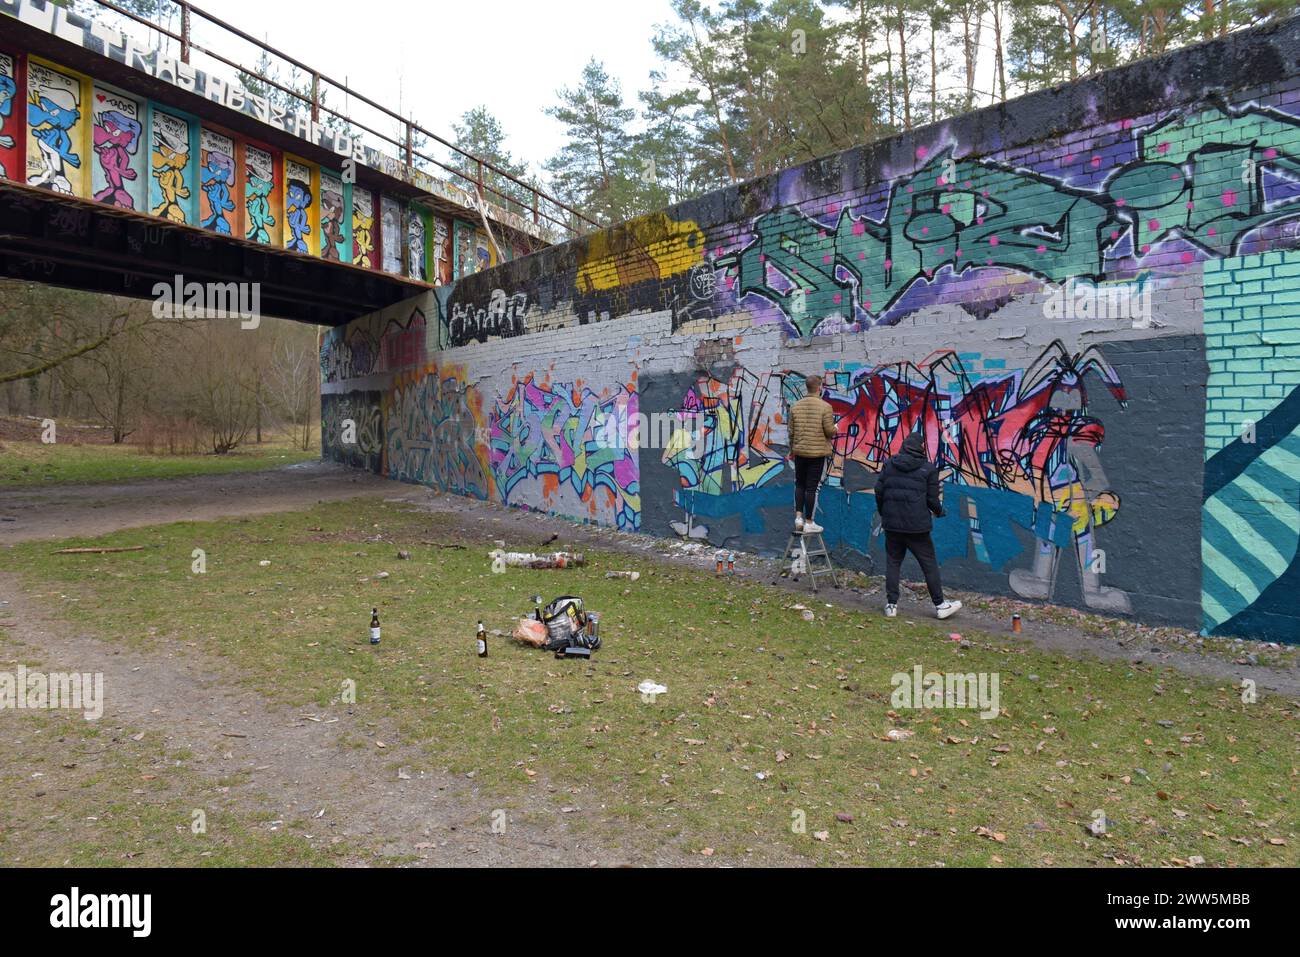 Artistes de rue peignant des graffitis d'art de rue sur le pont Stammbahn, un ancien pont désaffecté de la ligne de chemin de fer S Bahn à Kleinmachnow, Berlin, Allemagne Banque D'Images